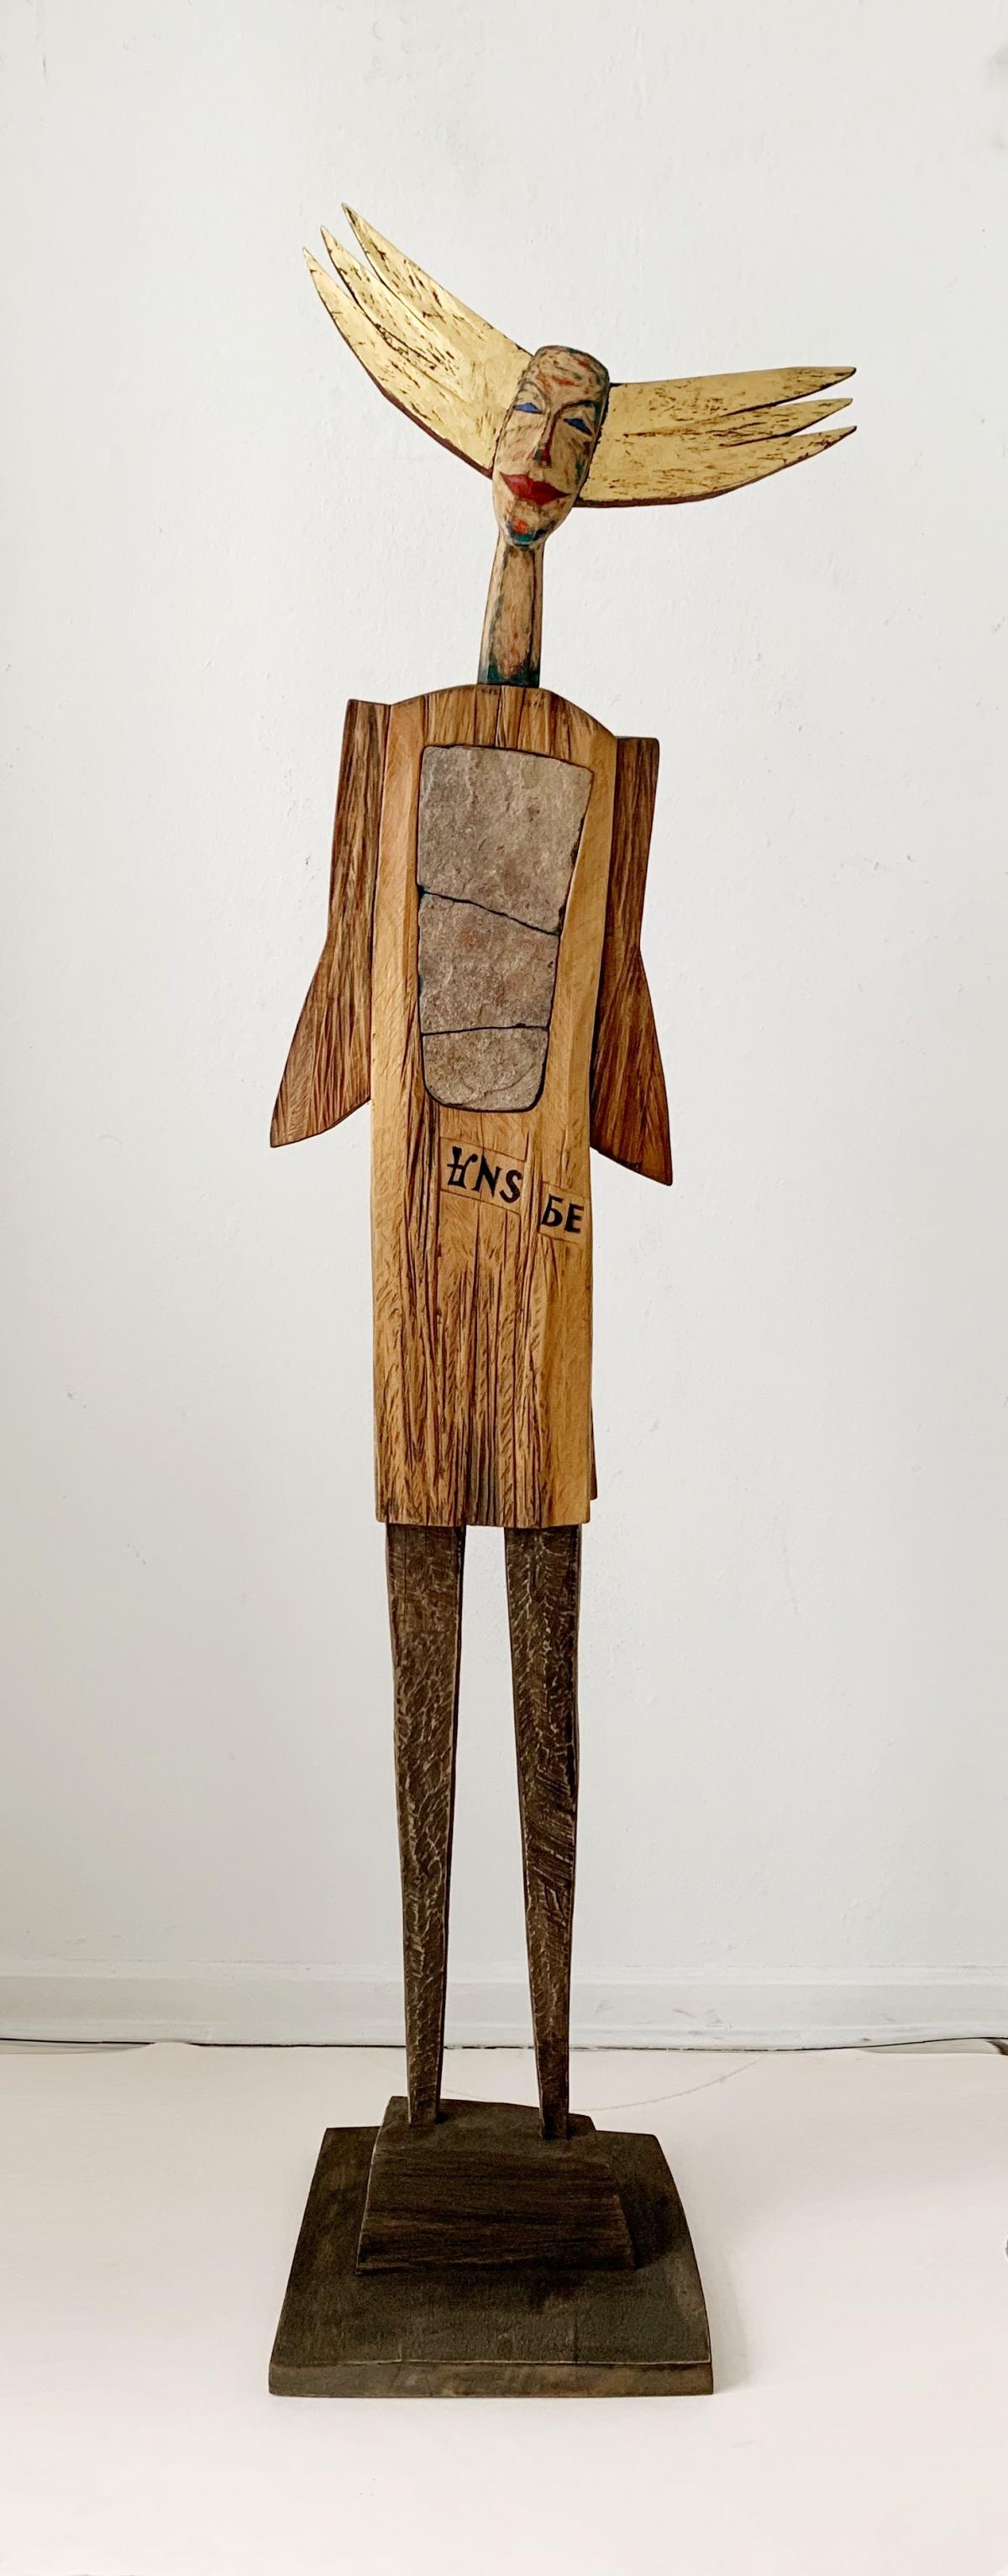 Figurative Sculpture Krzysztof Zielinski - Sans titre - Sculpture figurative en bois, Polichrome, art polonais